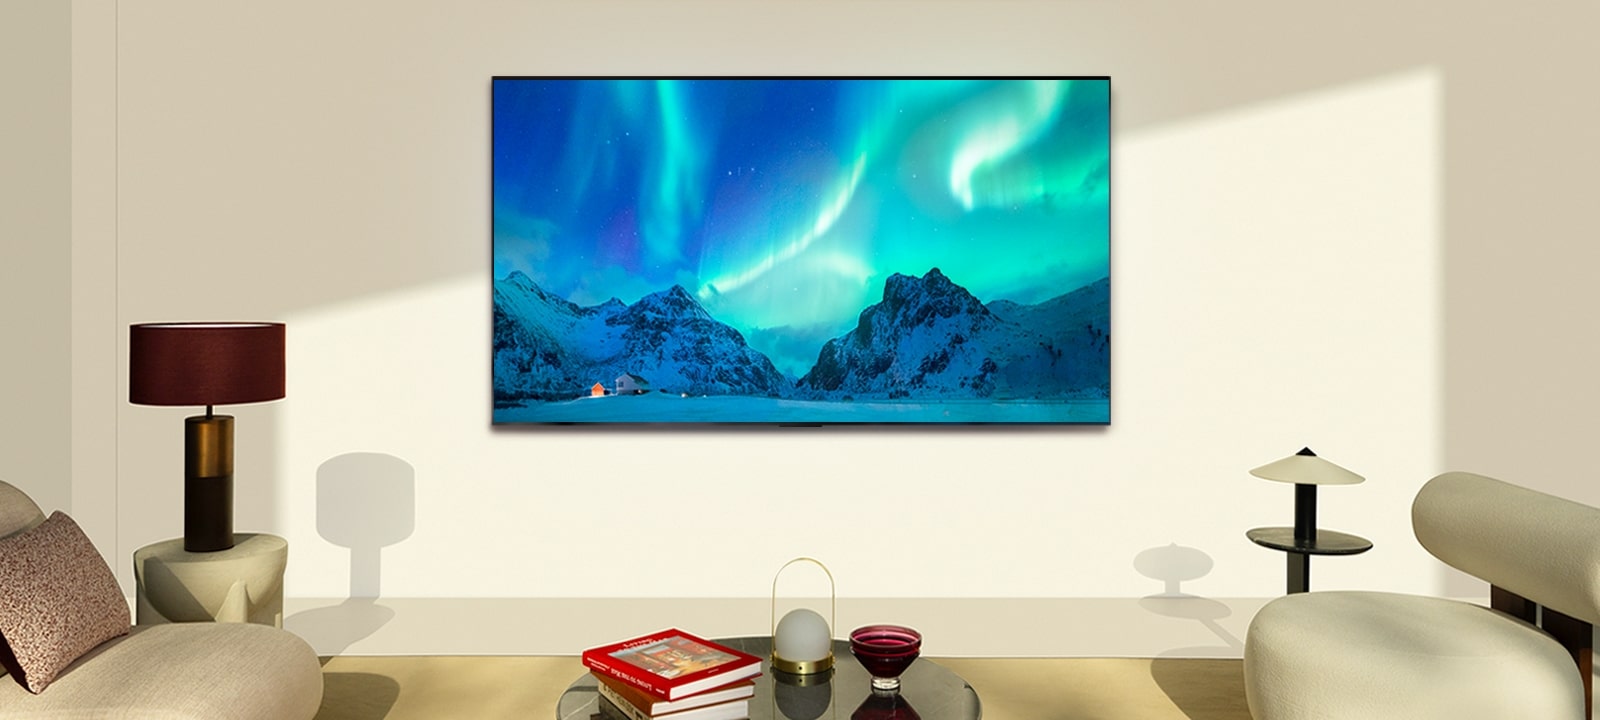 昼の現代的な生活空間に設置されたLG OLED TV。オーロラの画像が適切な輝度で表示される。